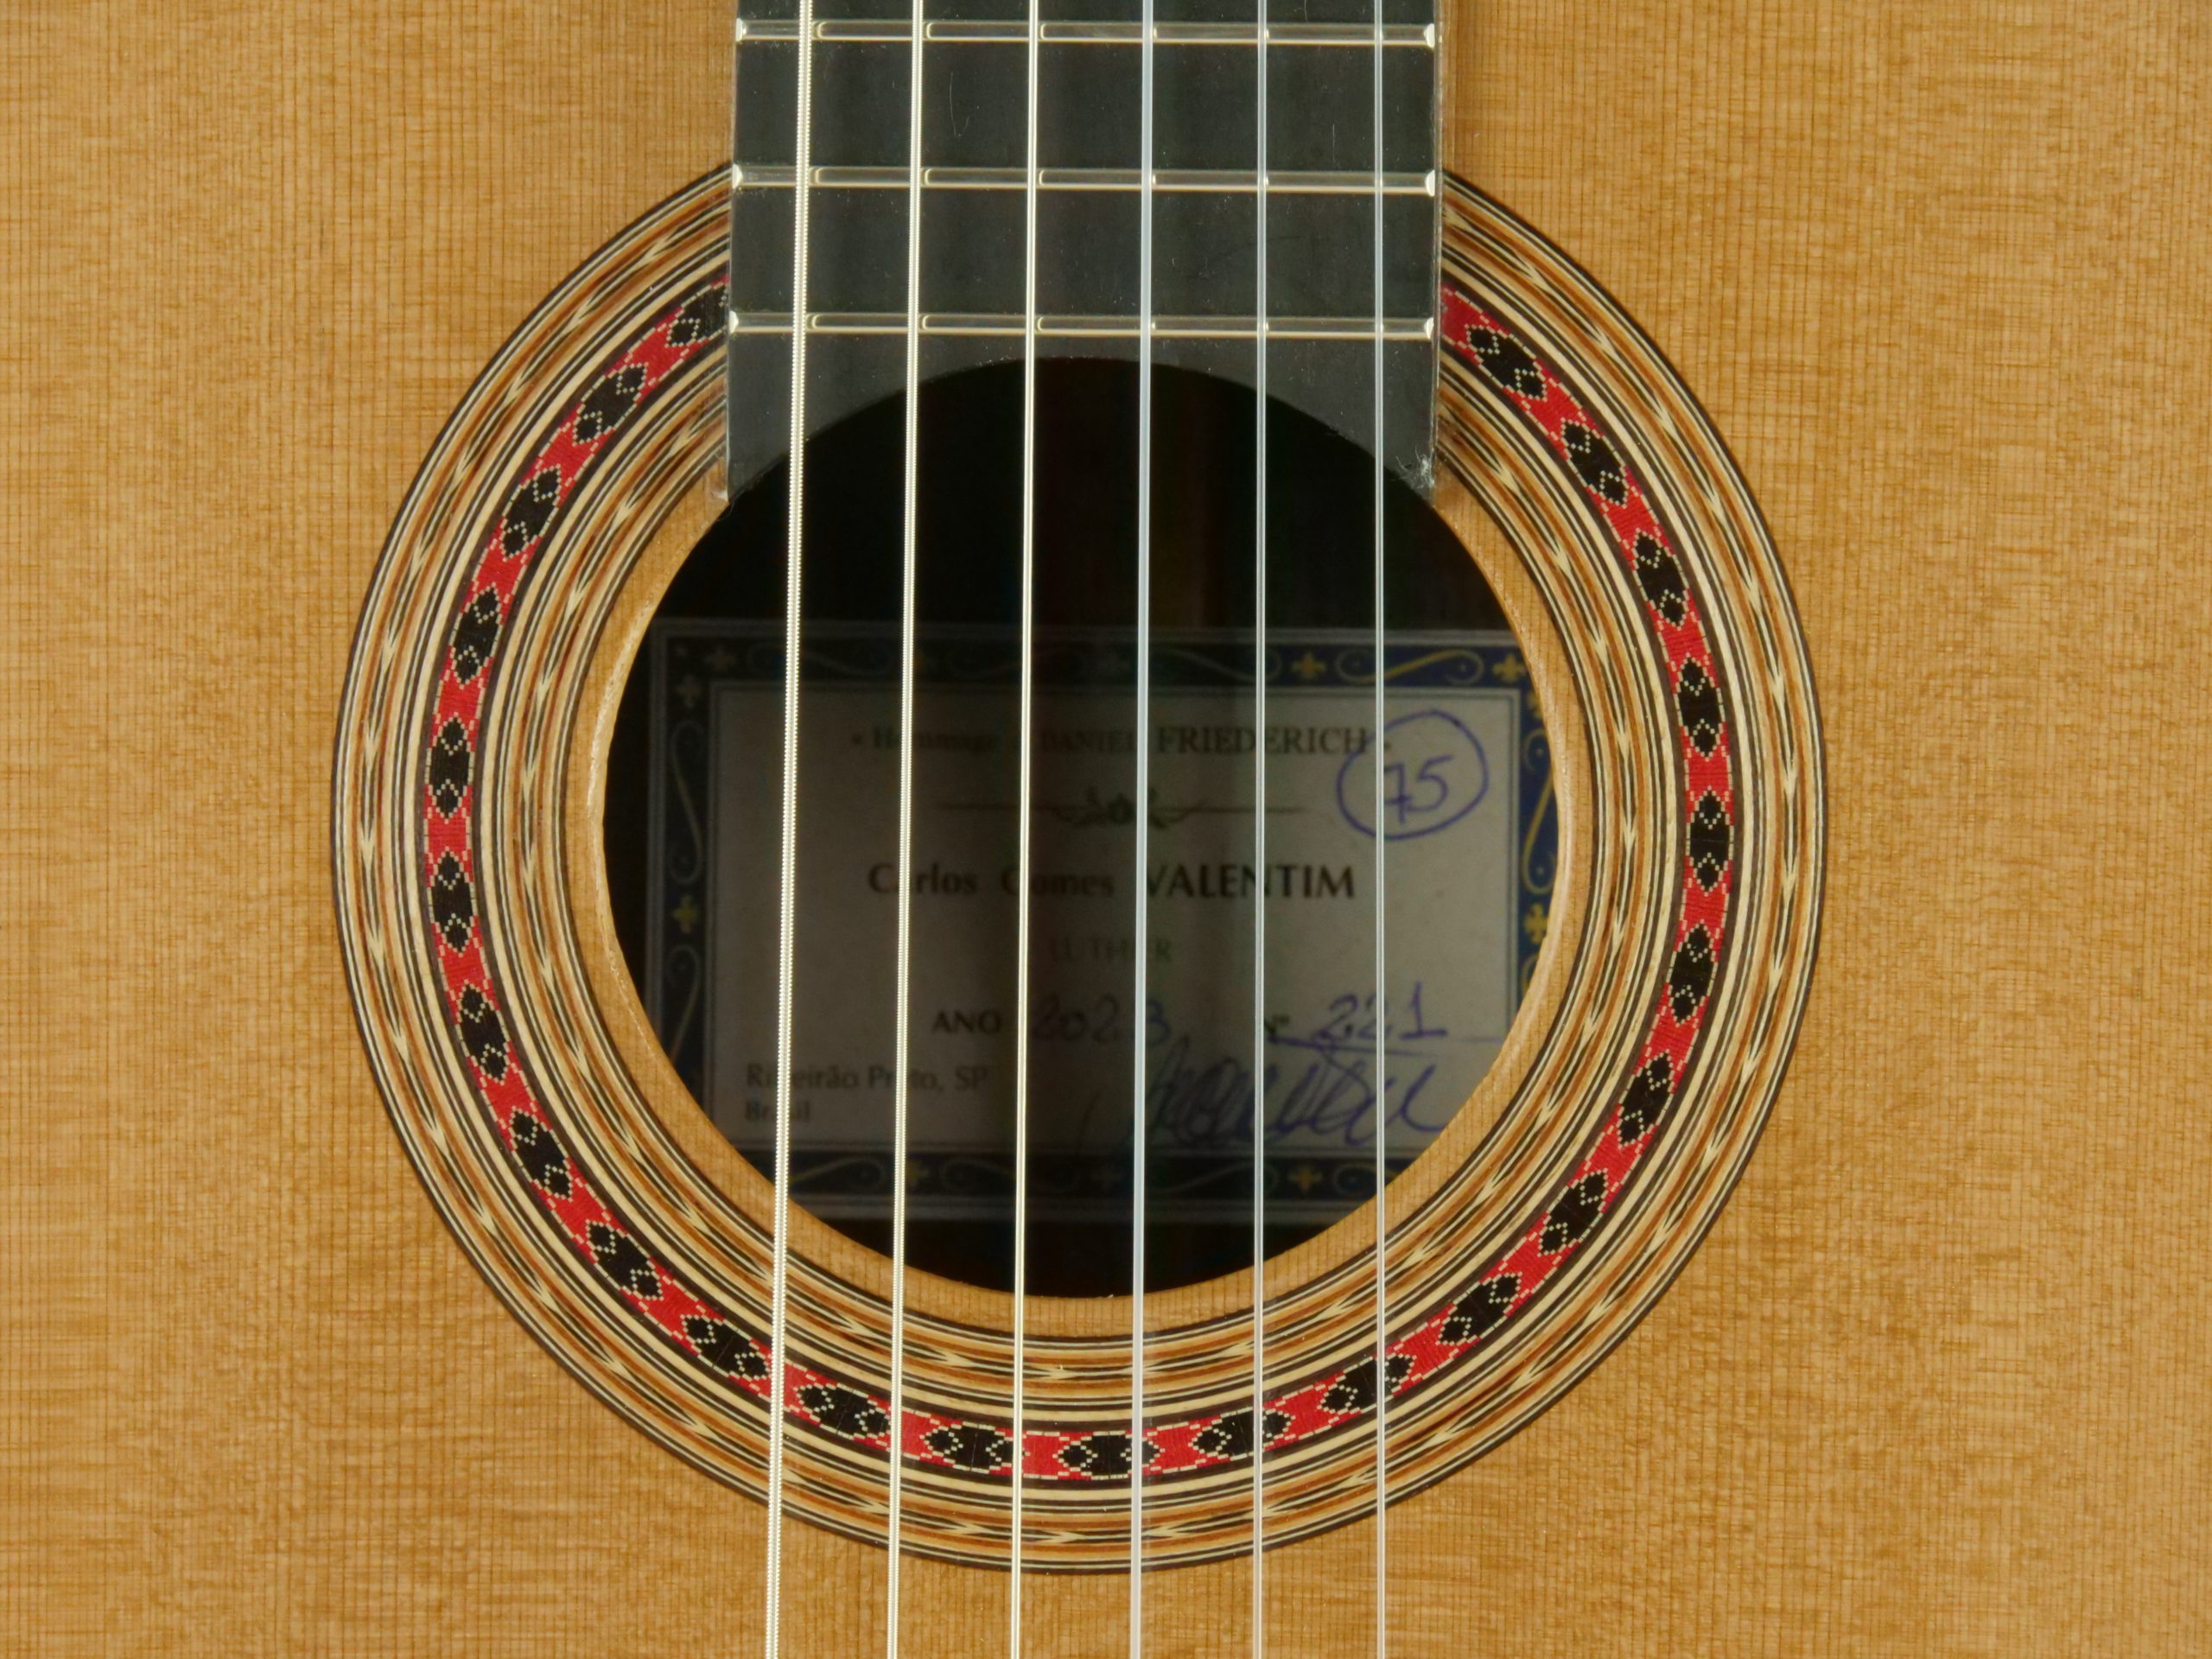 Valentim Carlos Gomes Modèle Hauser No 205 - 5900€ - Guitare classique  luthier